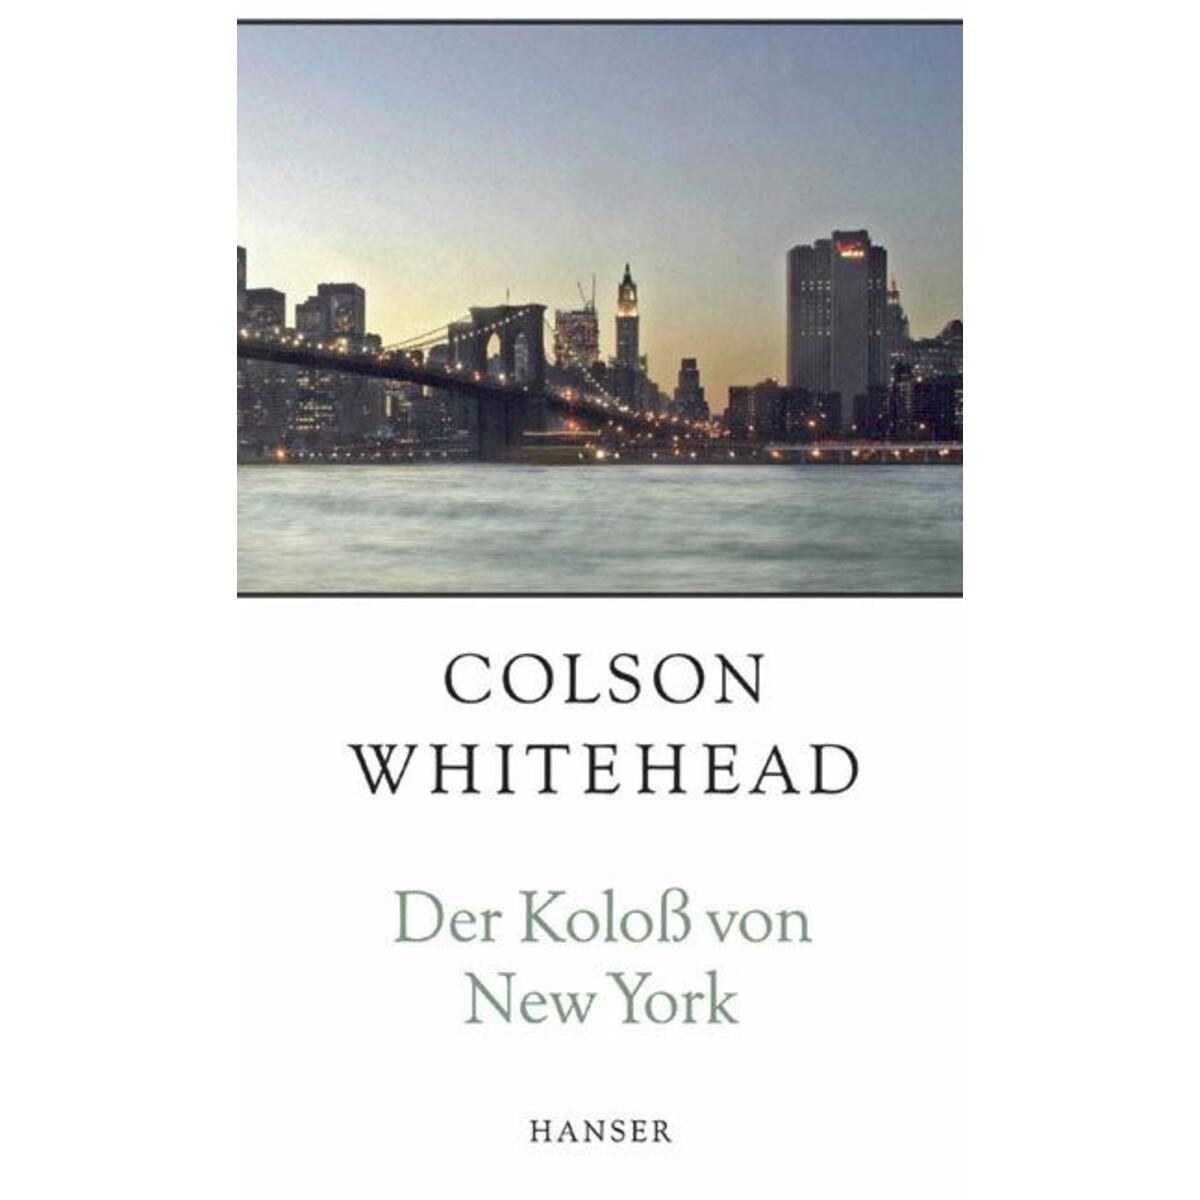 Der Koloß von New York von Carl Hanser Verlag